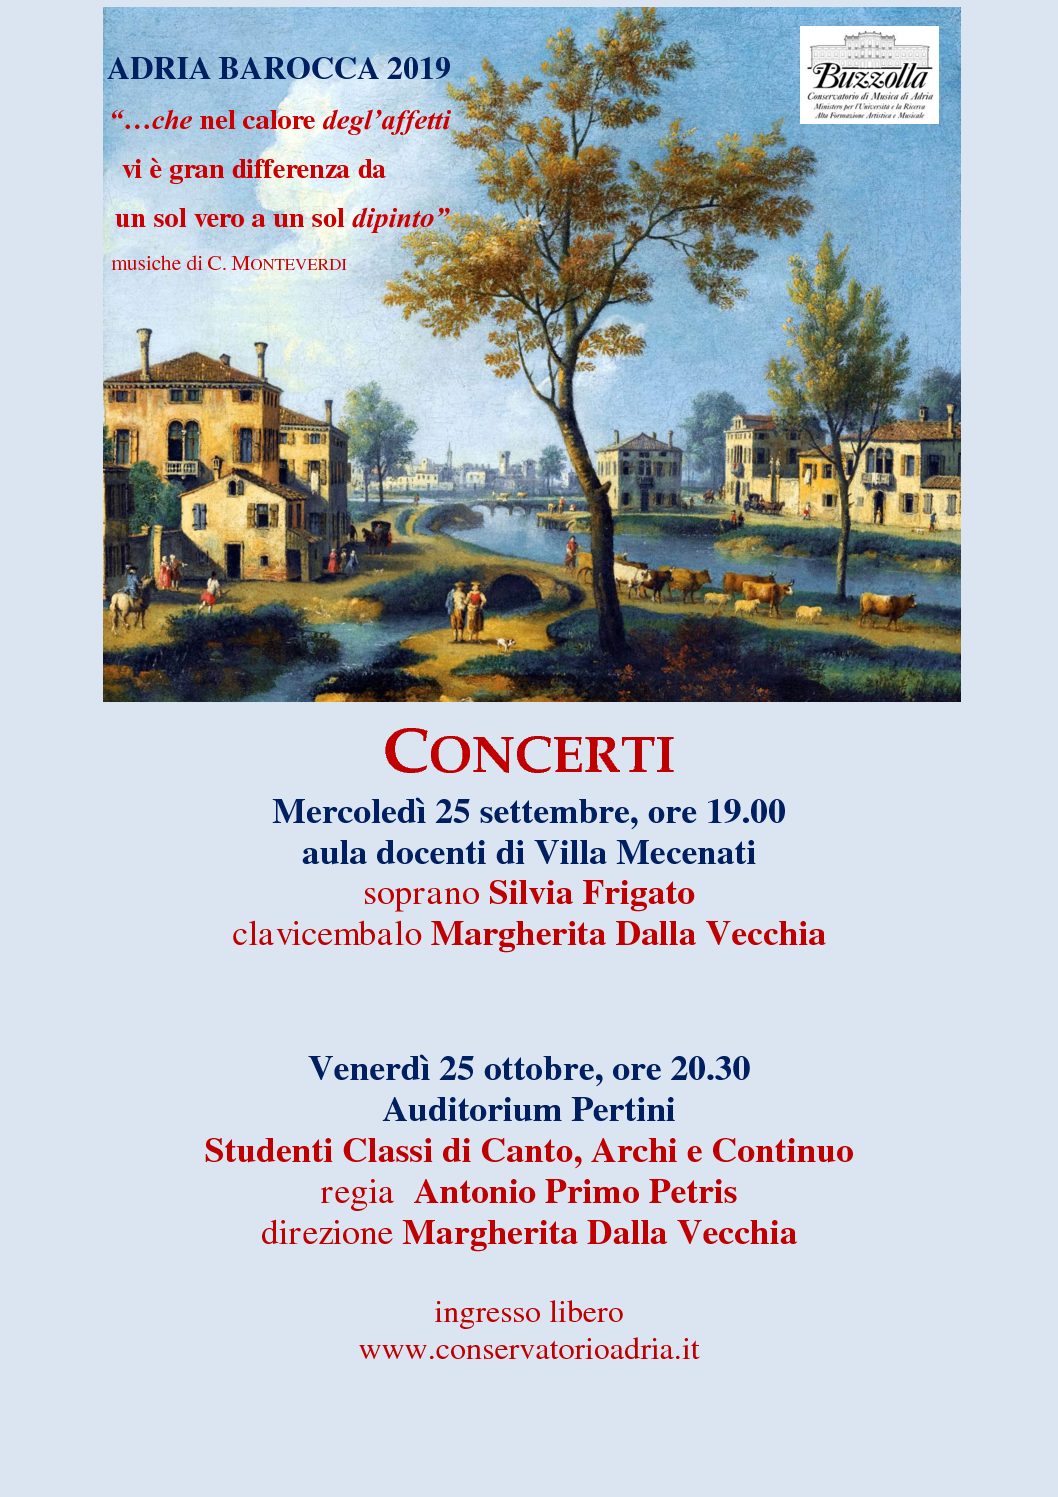 Adria Barocca 2019 – Concerti